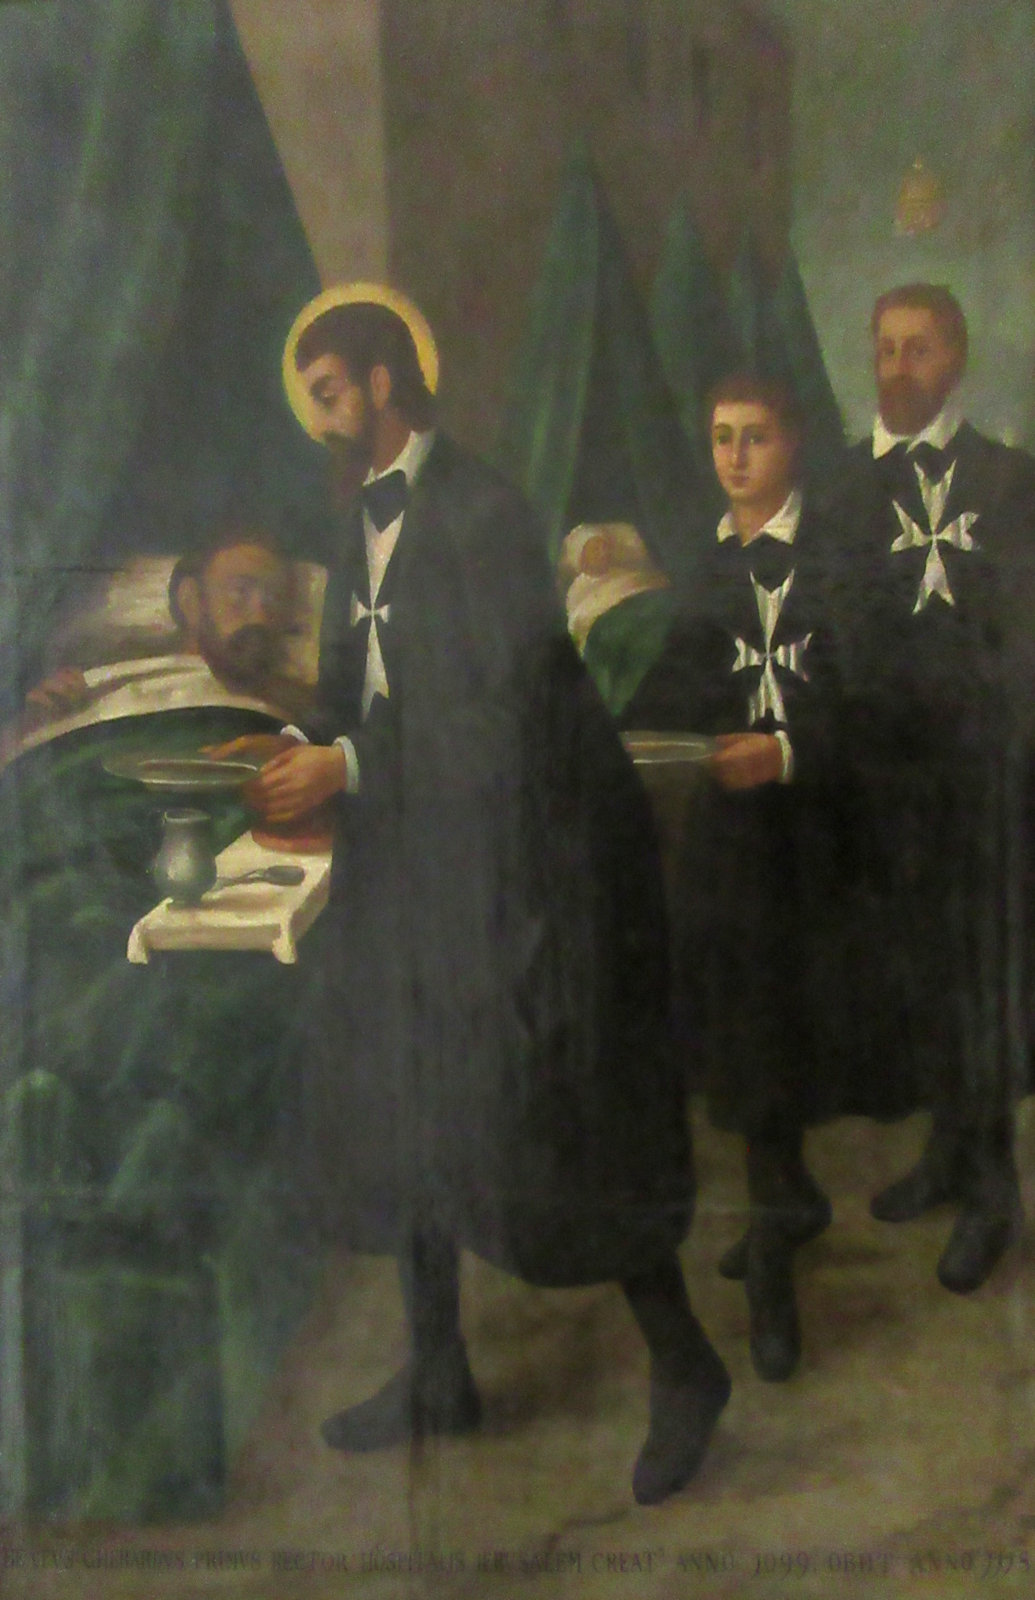 Gerhard und zwei Ordensbrüder versorgen einen Kranken, Bild im Museum Wignacourt in Rabat auf Malta